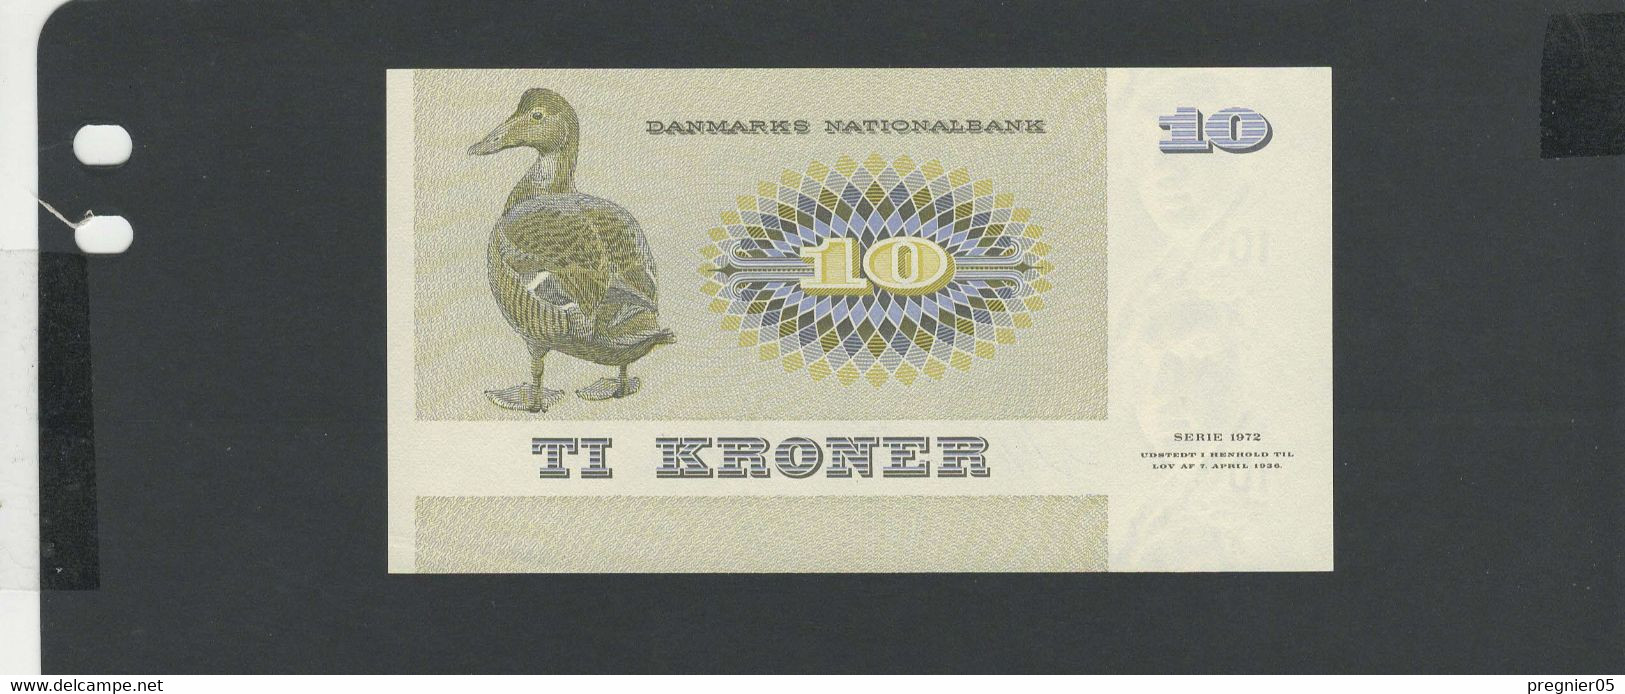 DANEMARK - Billet 10 Kroner 1972 NEUF/UNC Pick-48a - Dänemark